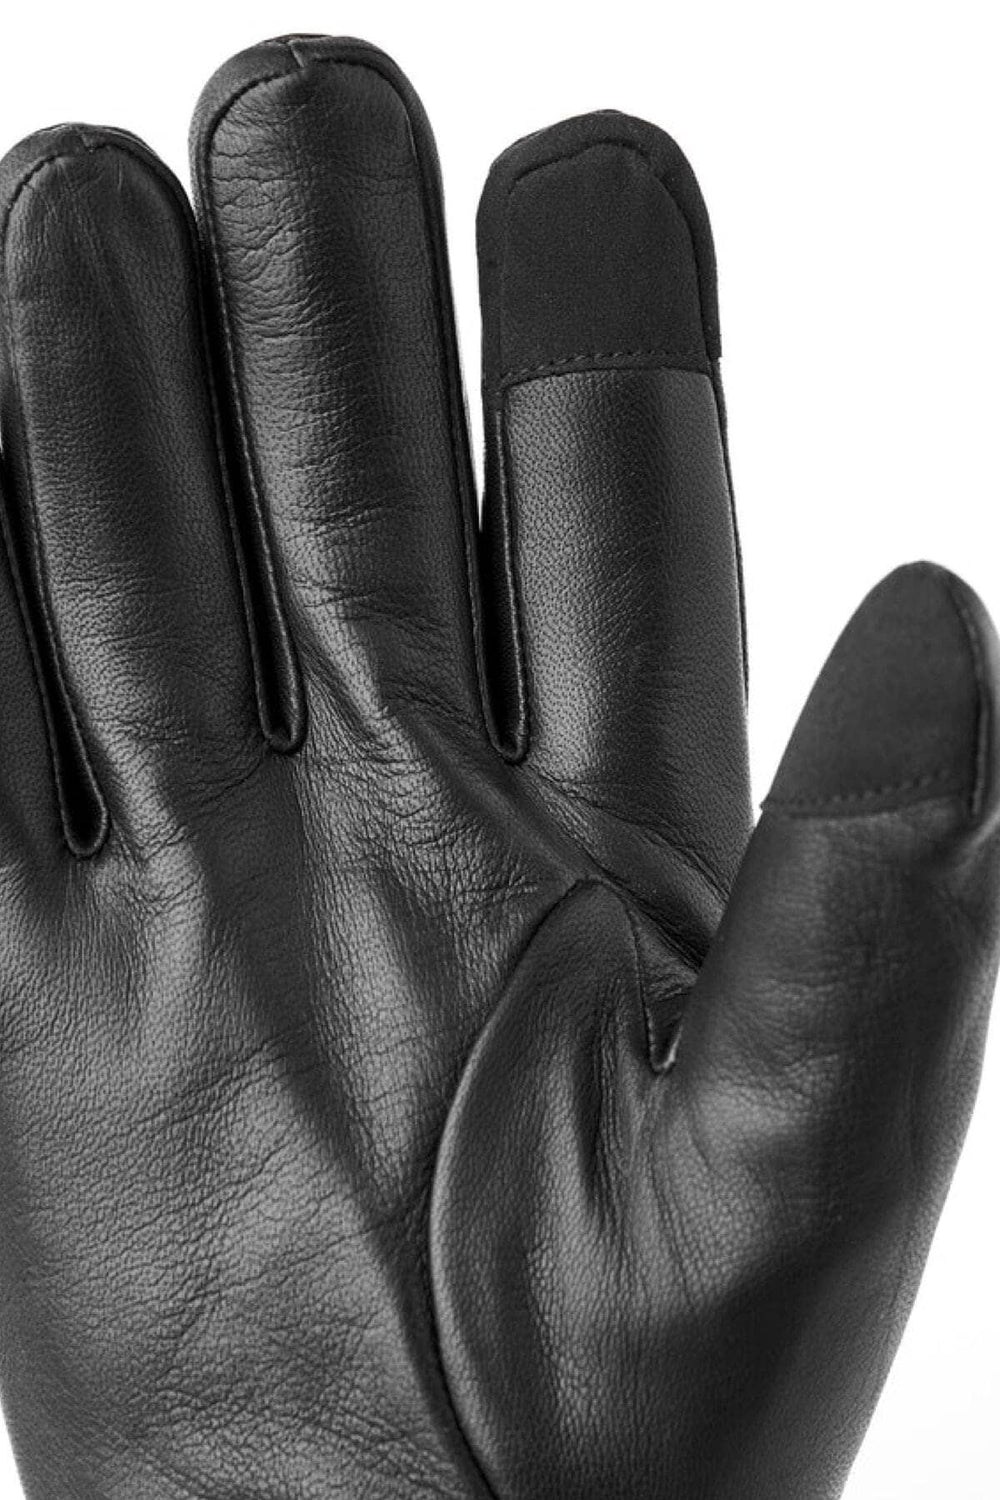 Gant John noir Homme - Accessoires - Gants Hestra